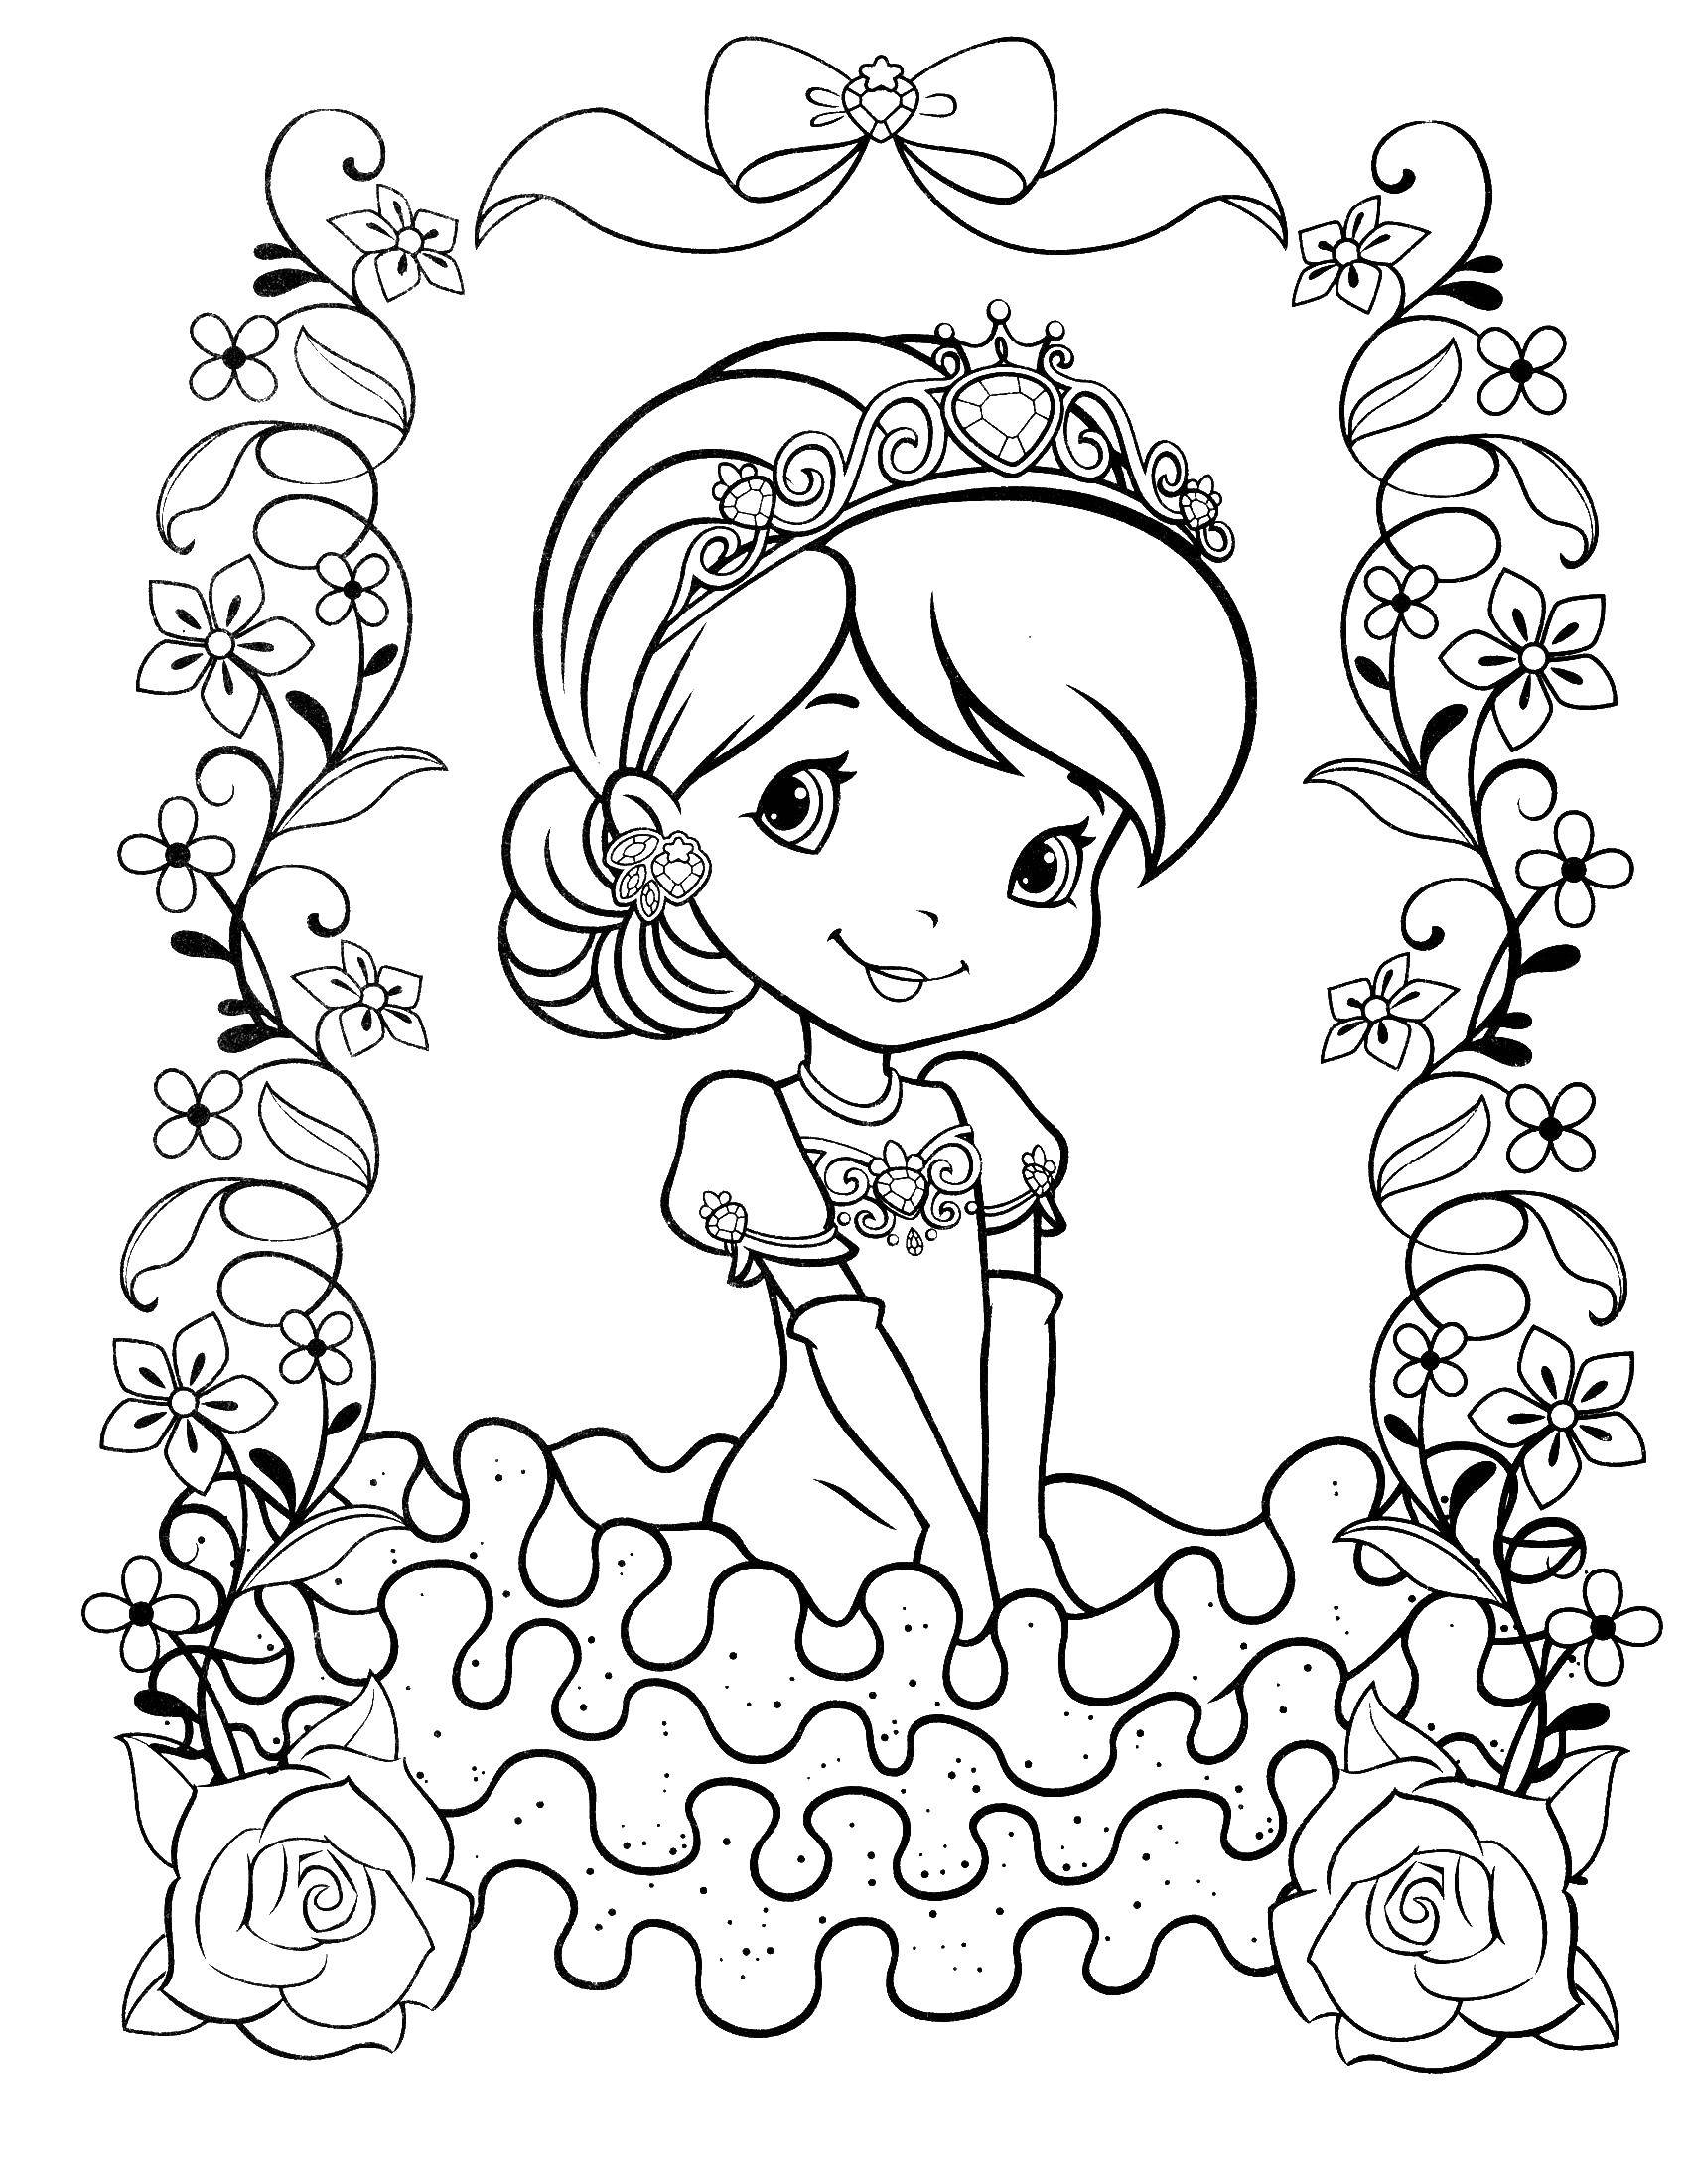 Название: Раскраска Маленькая принцесса. Категория: Принцессы. Теги: принцессы, цветочки, узоры.